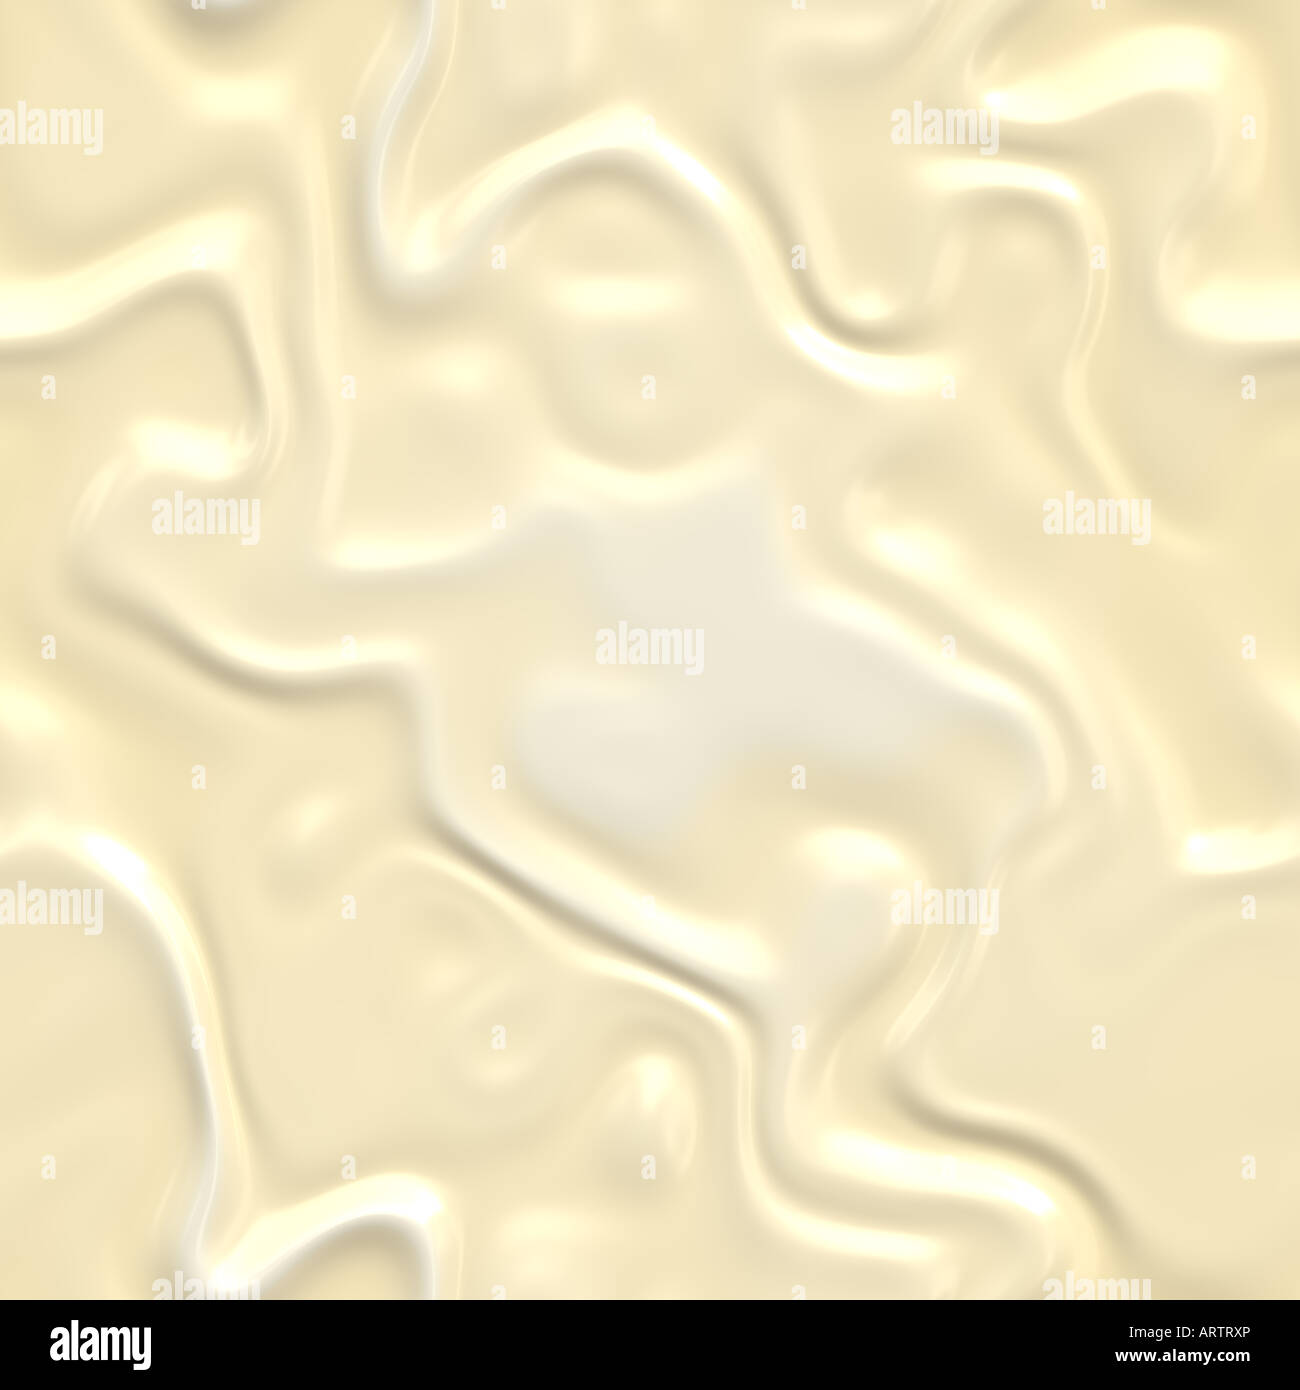 beautiful creamy white melting chocolate background image Stock Photo